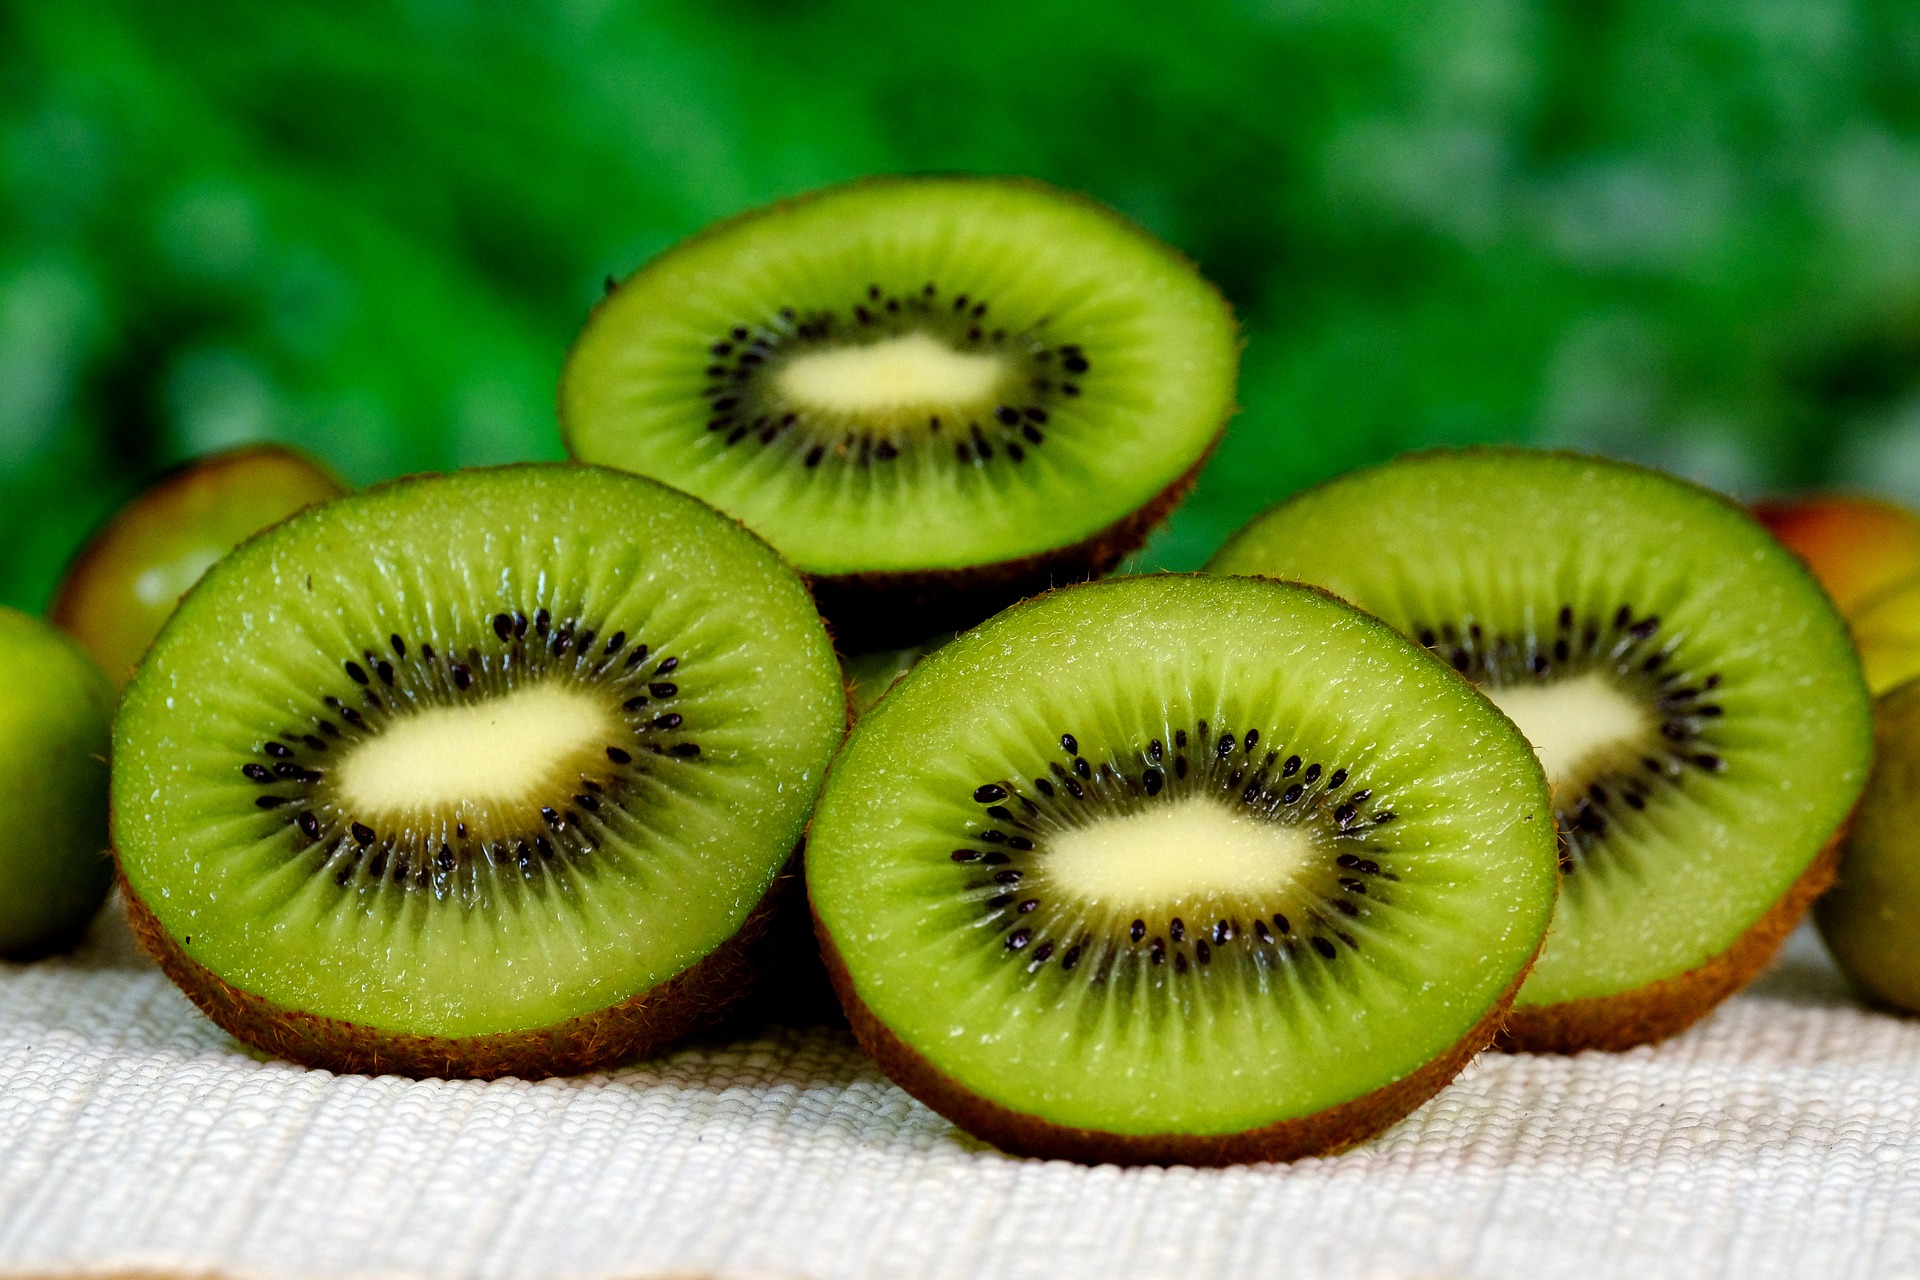 Kiwi, salah satu buah yang dapat meningkatkan trombosit. (Pixabay)